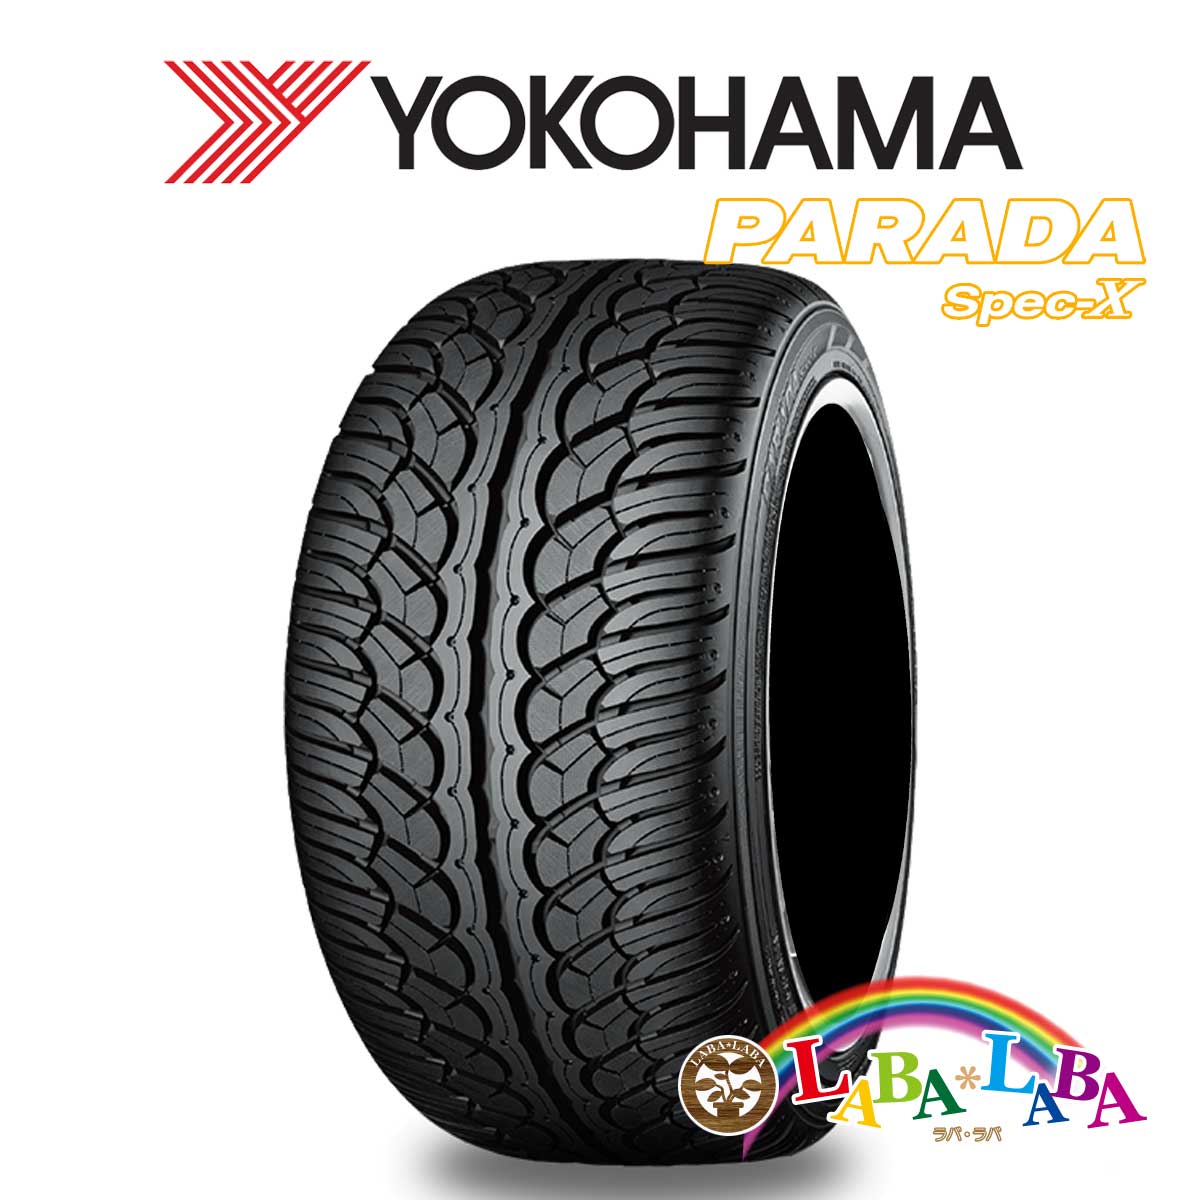 送料無料 国産タイヤ サマータイヤ 新品 タイヤのみ 最大59%OFFクーポン 2本SET 新しい到着 YOKOHAMA ヨコハマ PA02 102V PARADA Spec-X 2本セット 235 55R20